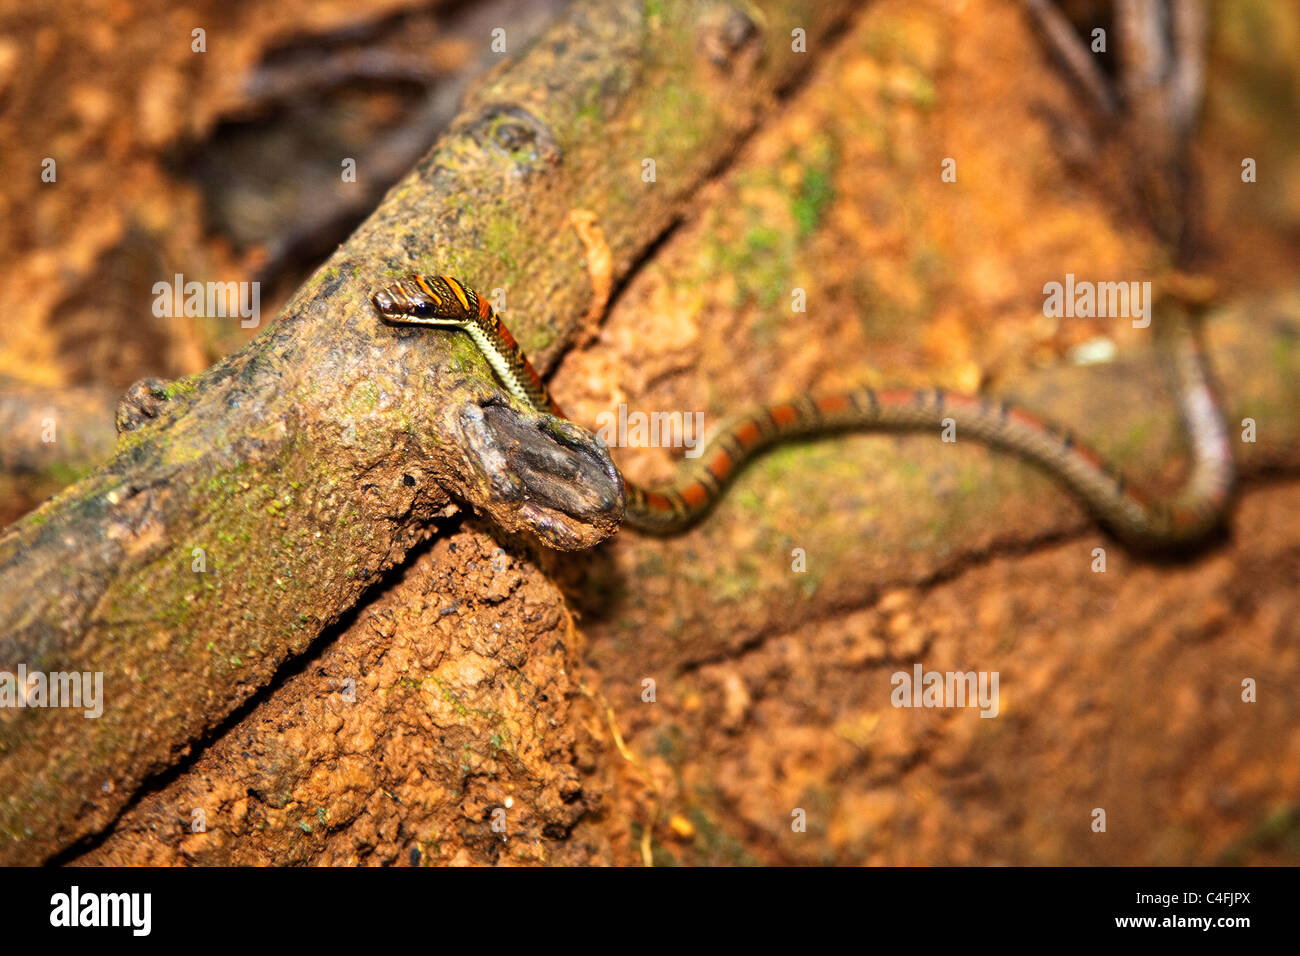 Doble árbol prohibido ( Serpiente Chrysopelea pelias ) Foto de stock